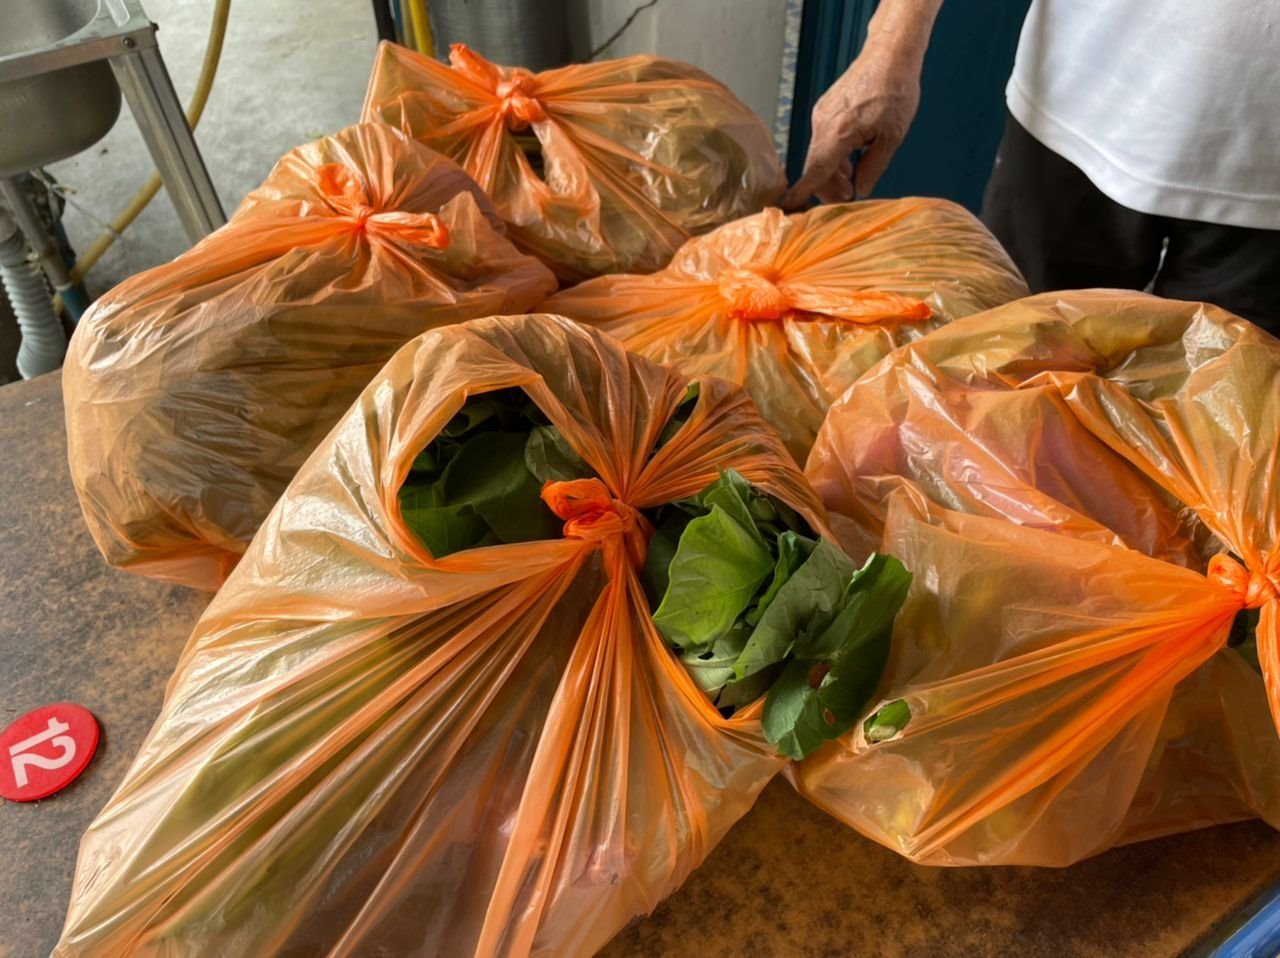 徐世德表示，邻近的蔬菜小贩一周也有三至四次送蔬菜来，供有需要的民众自由索取。